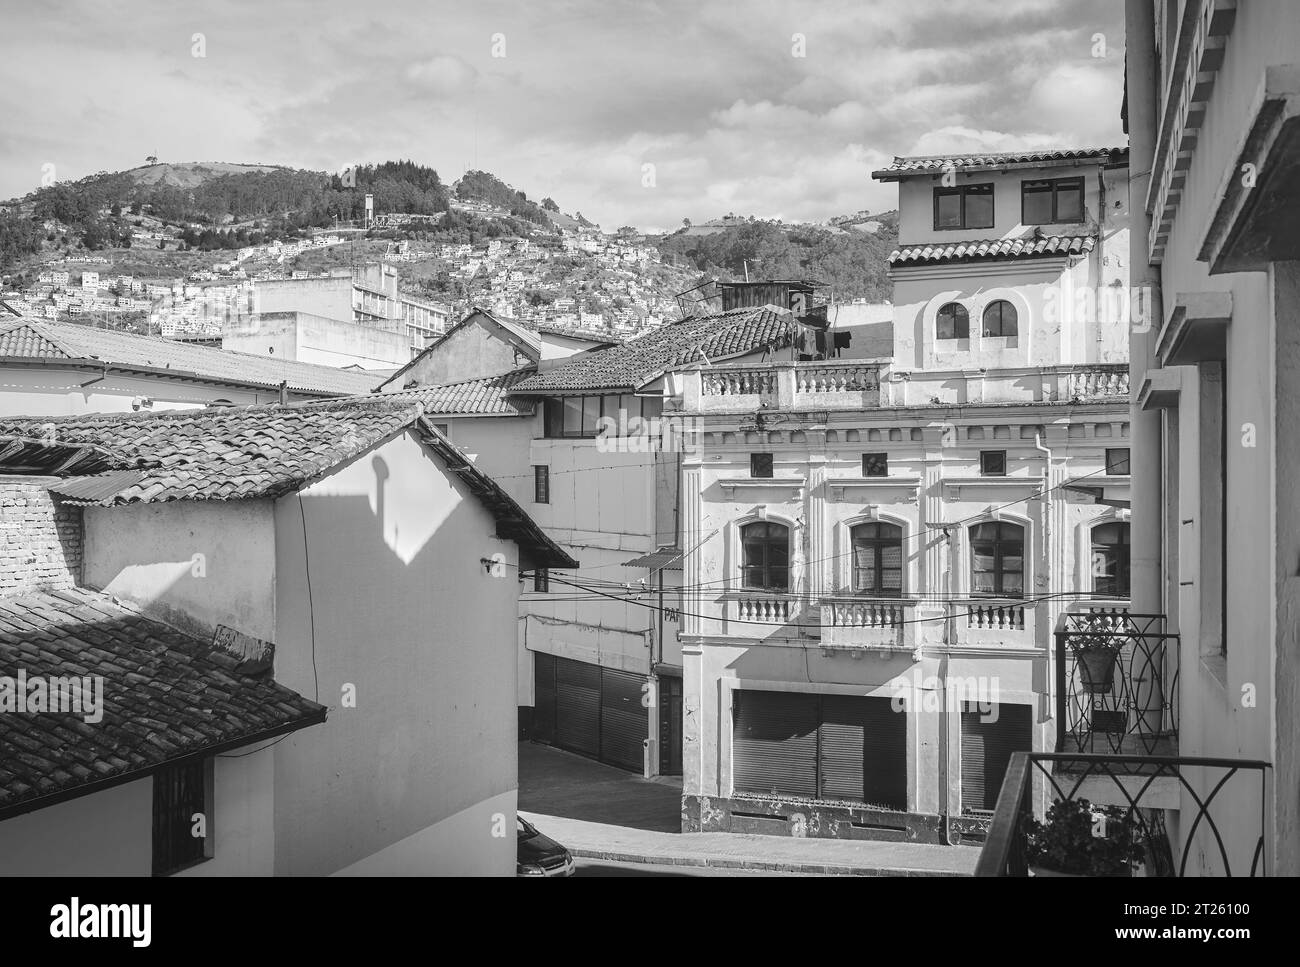 Photo noir et blanc de la vieille ville de Quito architecture diversifiée, Équateur. Banque D'Images